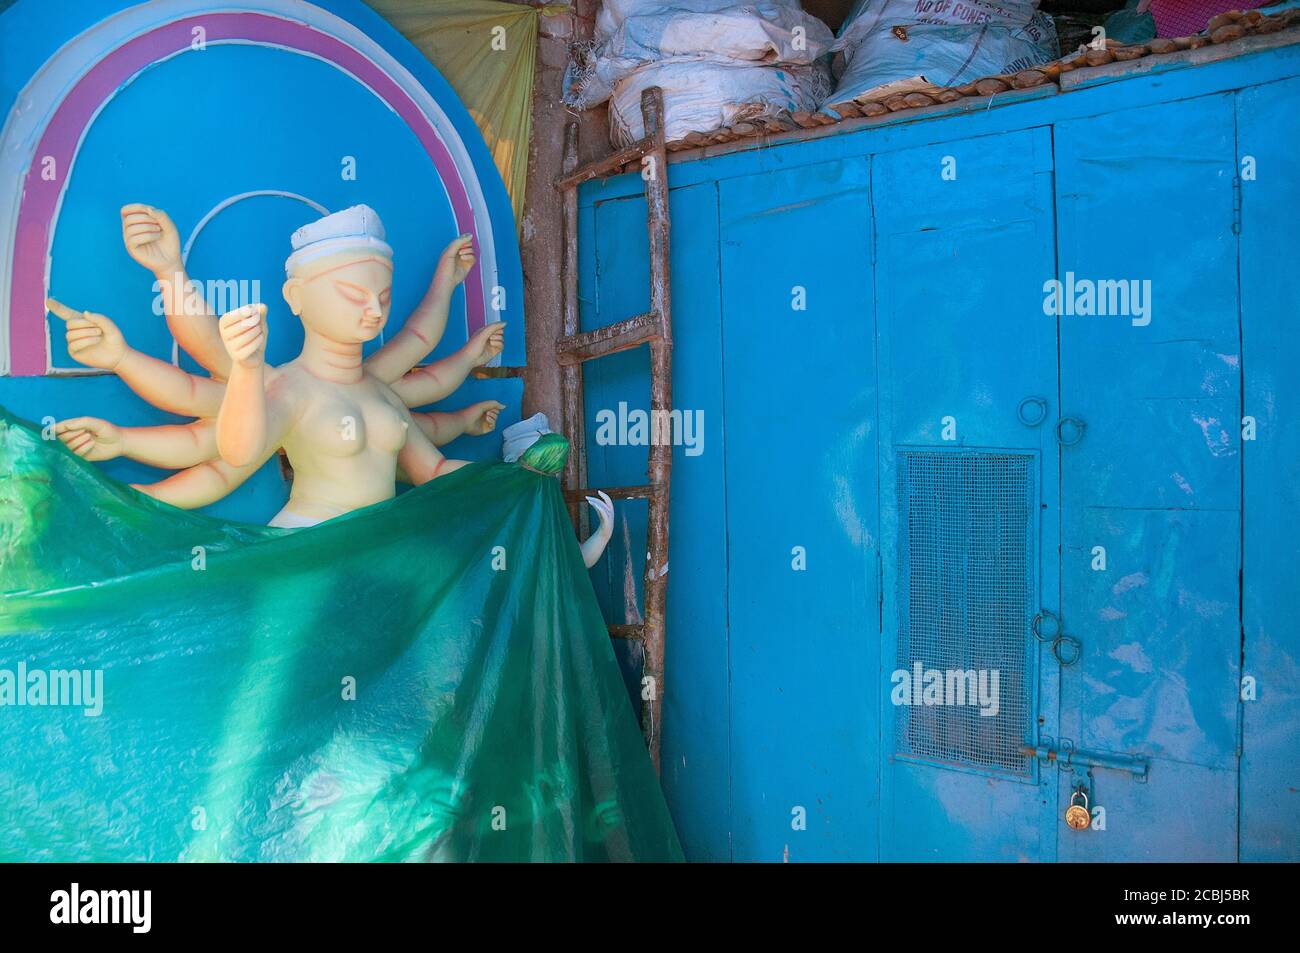 1er octobre 2015 kolkata bengale occidental inde: Des idoles Durga sont fabriquées à Kumartuli, Kolkata. Les idoles ont été recouvertes de plastique pour les protéger Banque D'Images